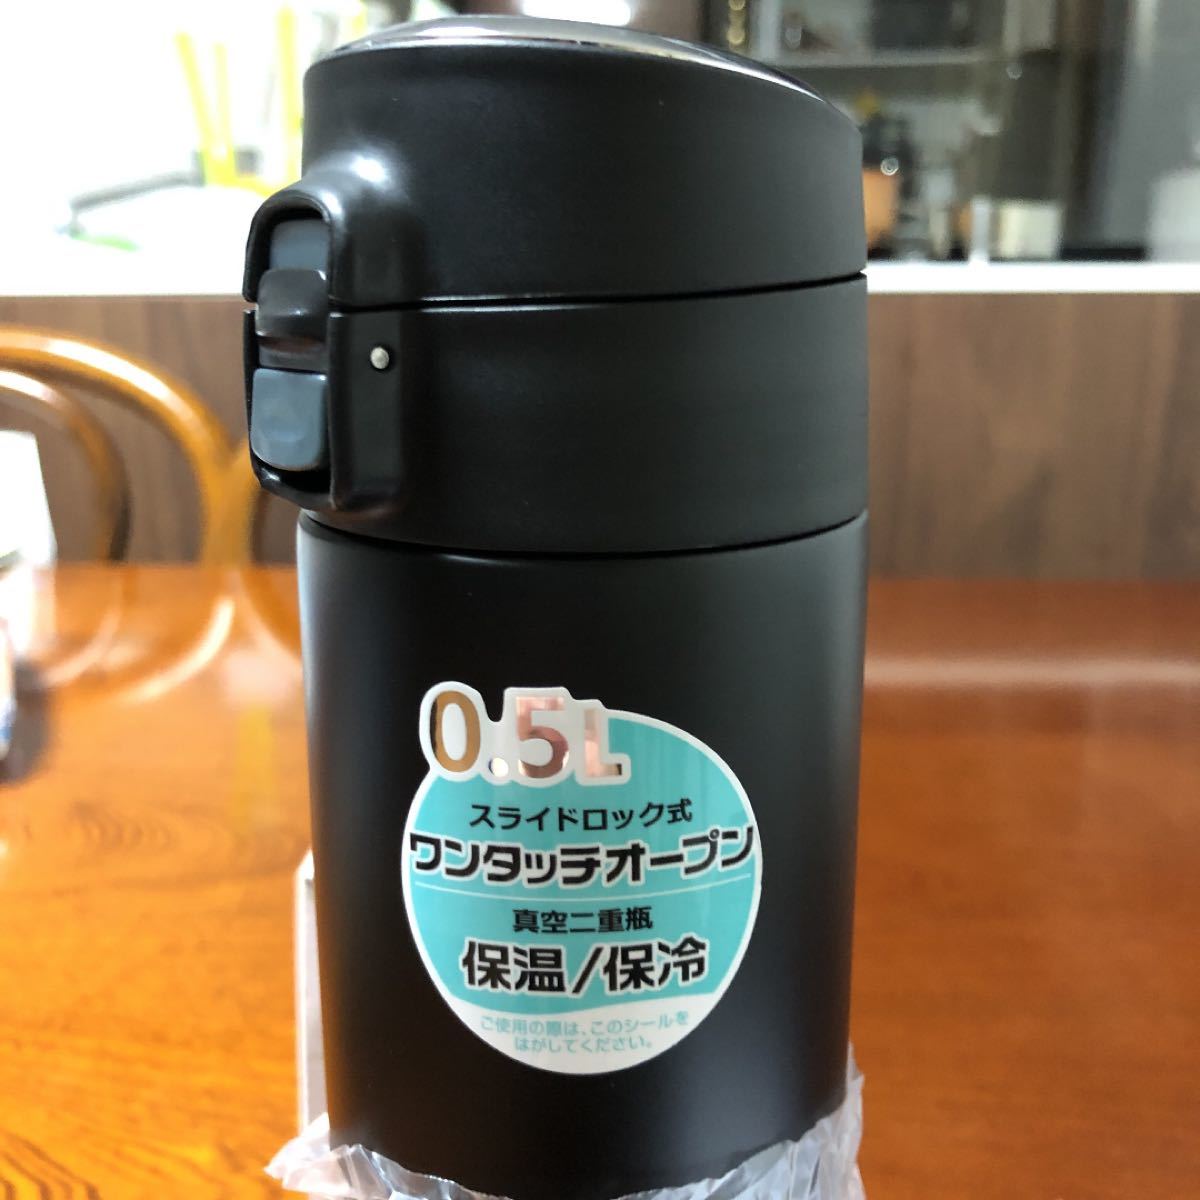 ピーコック ステンレスボトル 【コンパクトマグ】 0.5L ブラック